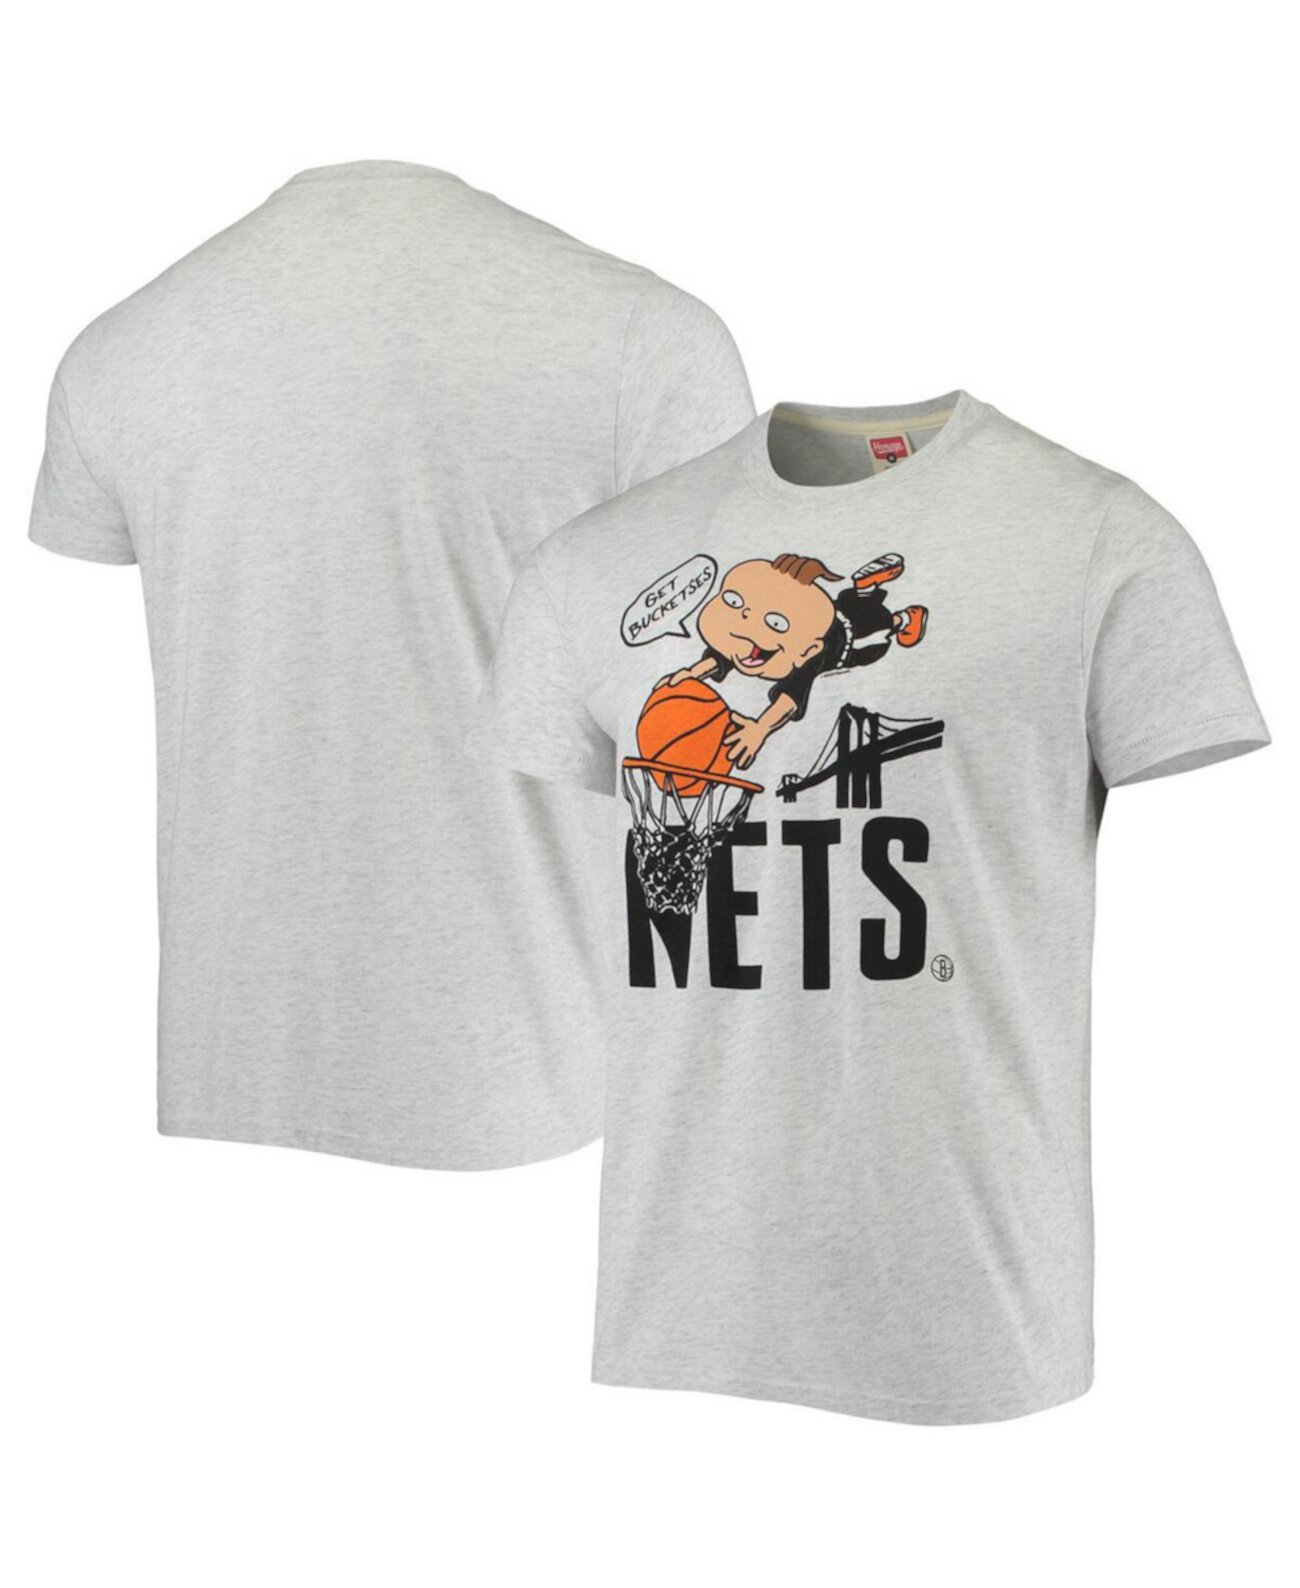 Мужская футболка Ash Brooklyn Nets NBA x Rugrats Tri-Blend Homage